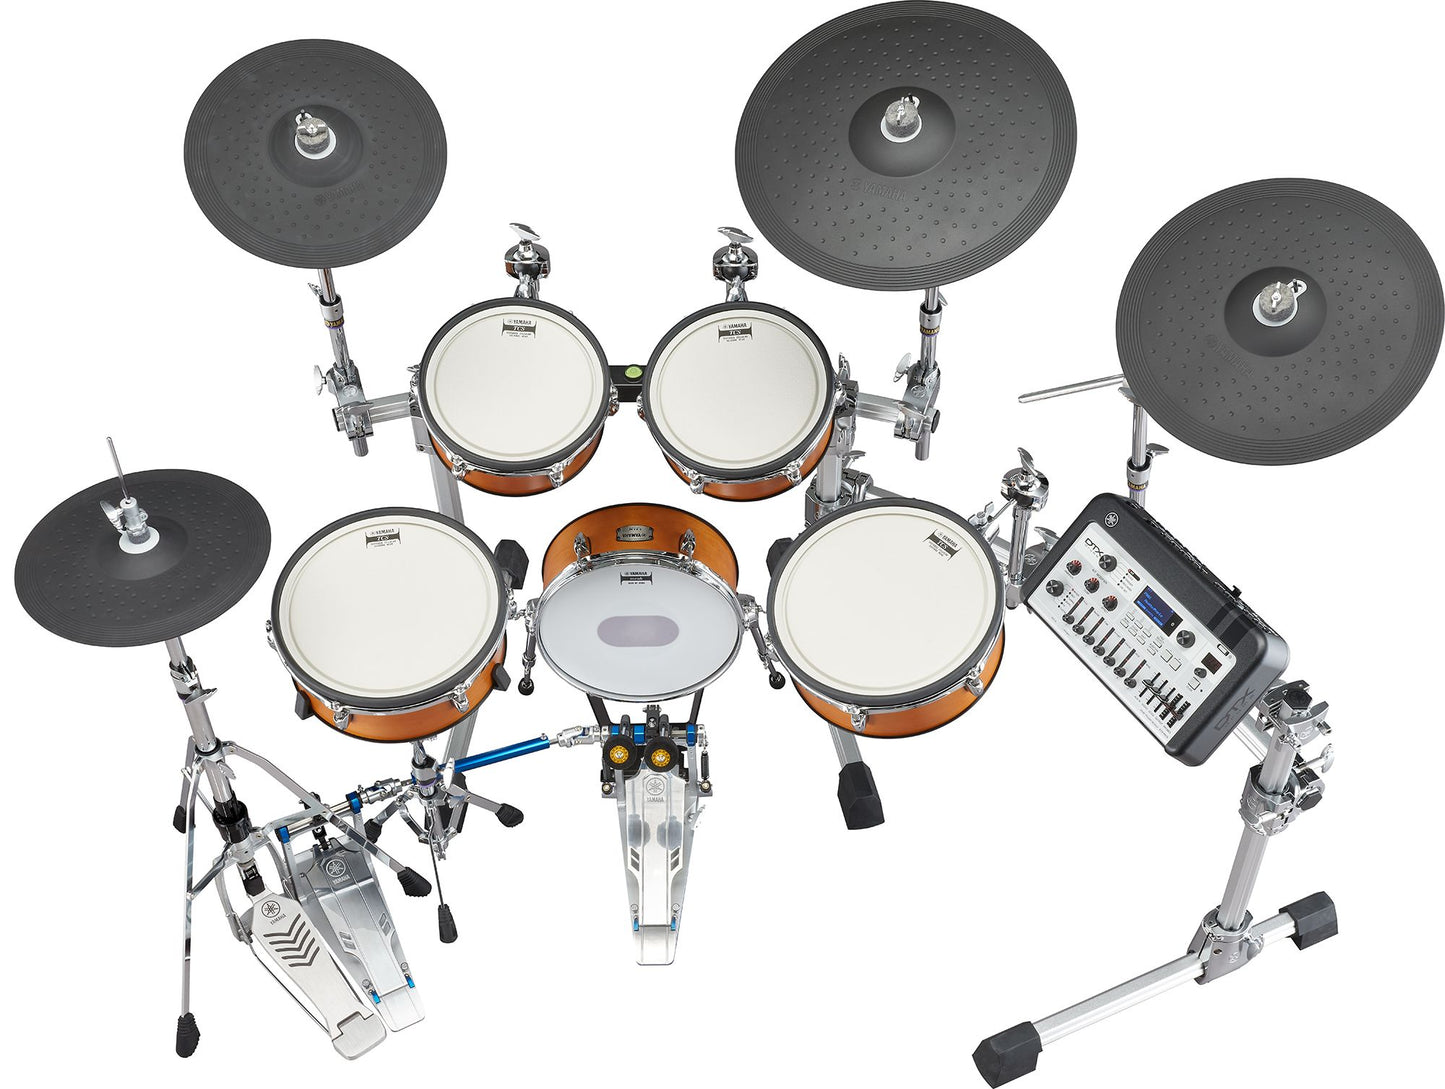 Yamaha DTX10KX Electronic Drum Kit DTX10K-X - TCS Pad Kit